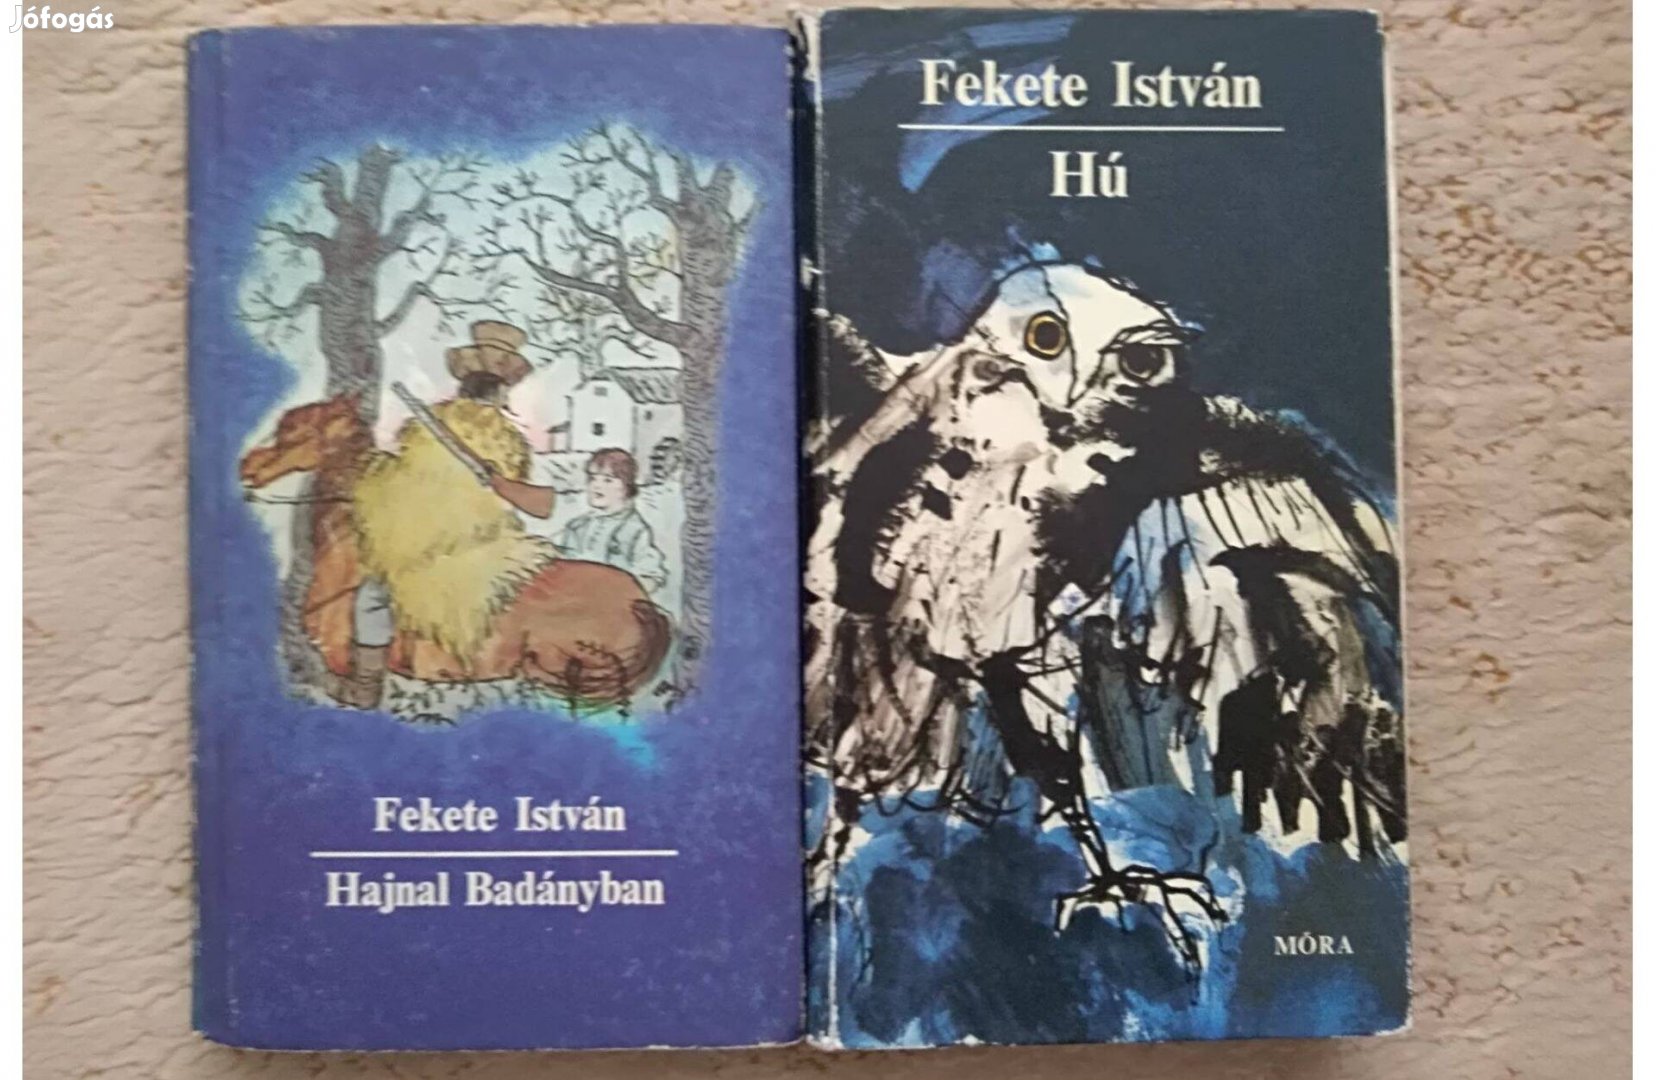 Fekete István: Hajnal Badányban (1965) és Hú (1980) könyv